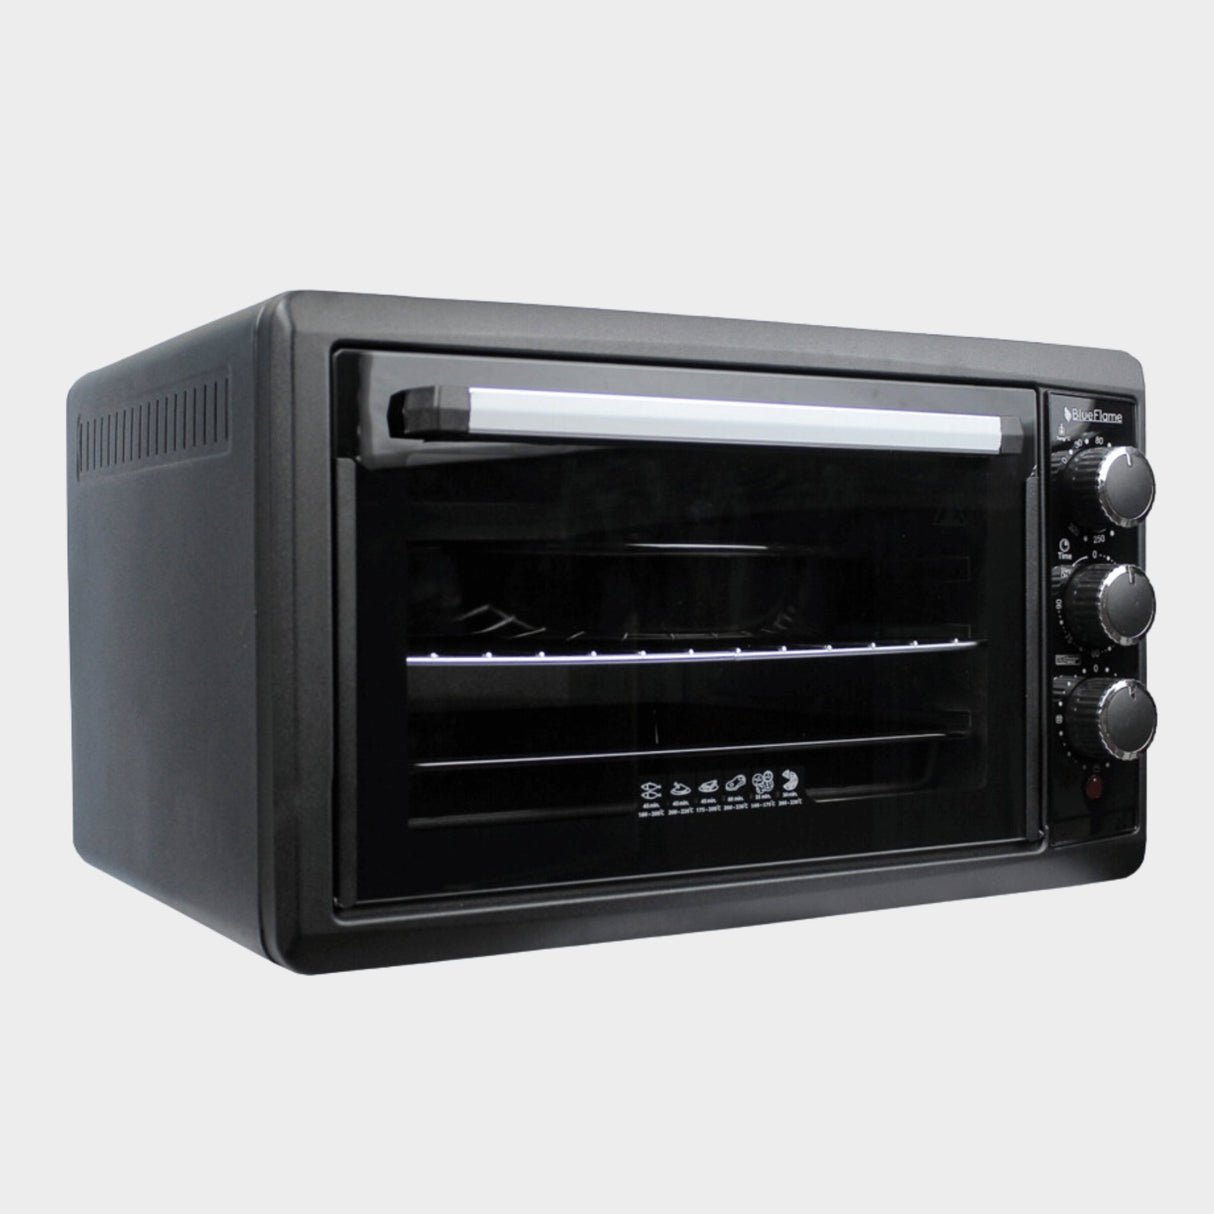 Blueflame 50L Mini Oven BF-0723 - Black - KWT Tech Mart